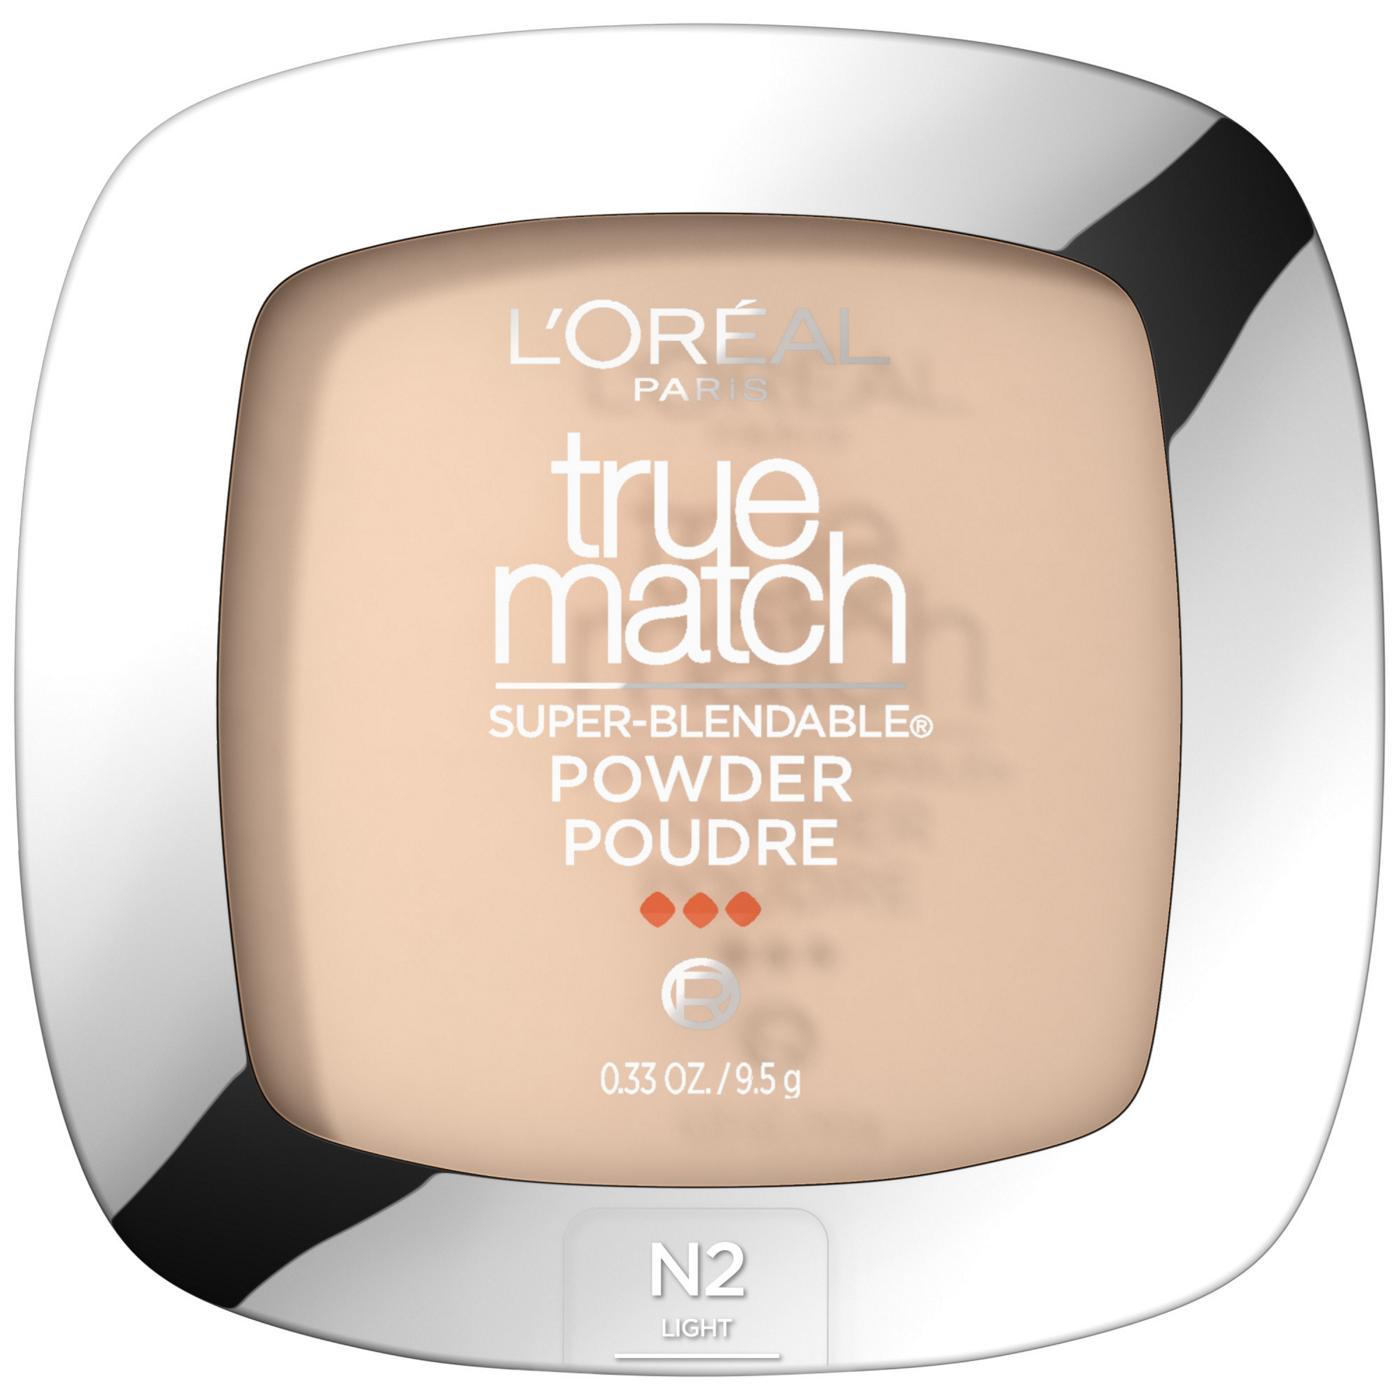 L'Oréal Paris True Match Super-Blendable Oil Free Makeup Powder Classic Ivory; image 1 of 5